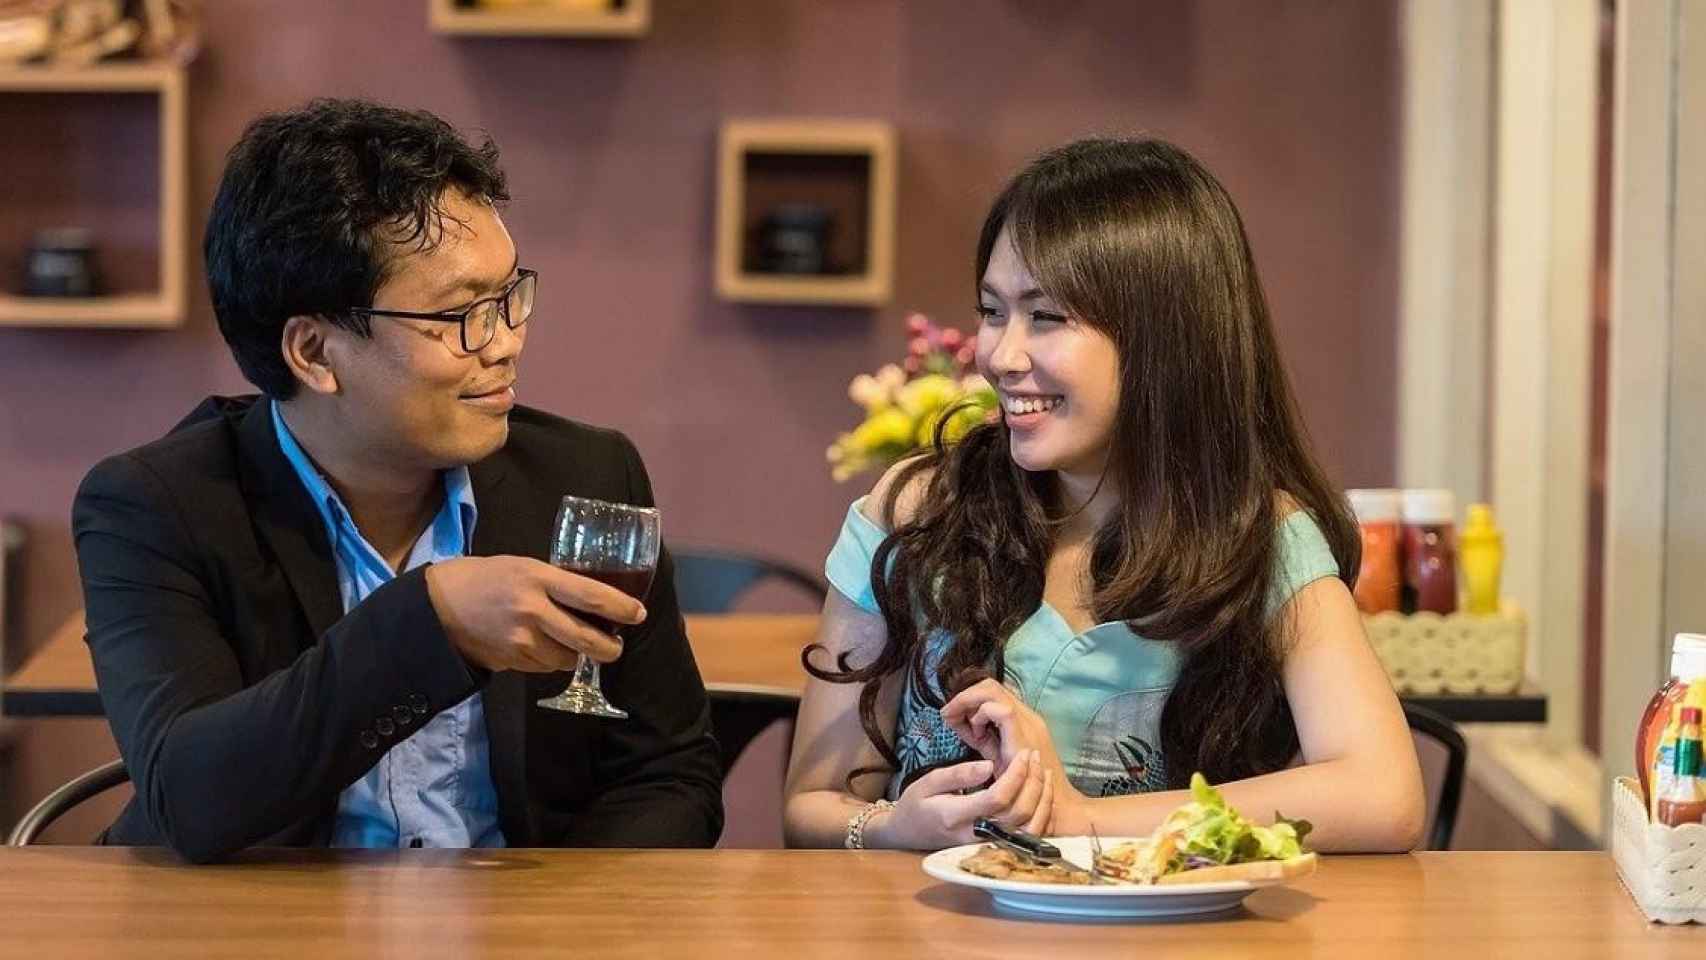 Japón potencia la formación de parejas sentimentales / Sasin Tipchai EN PIXABAY